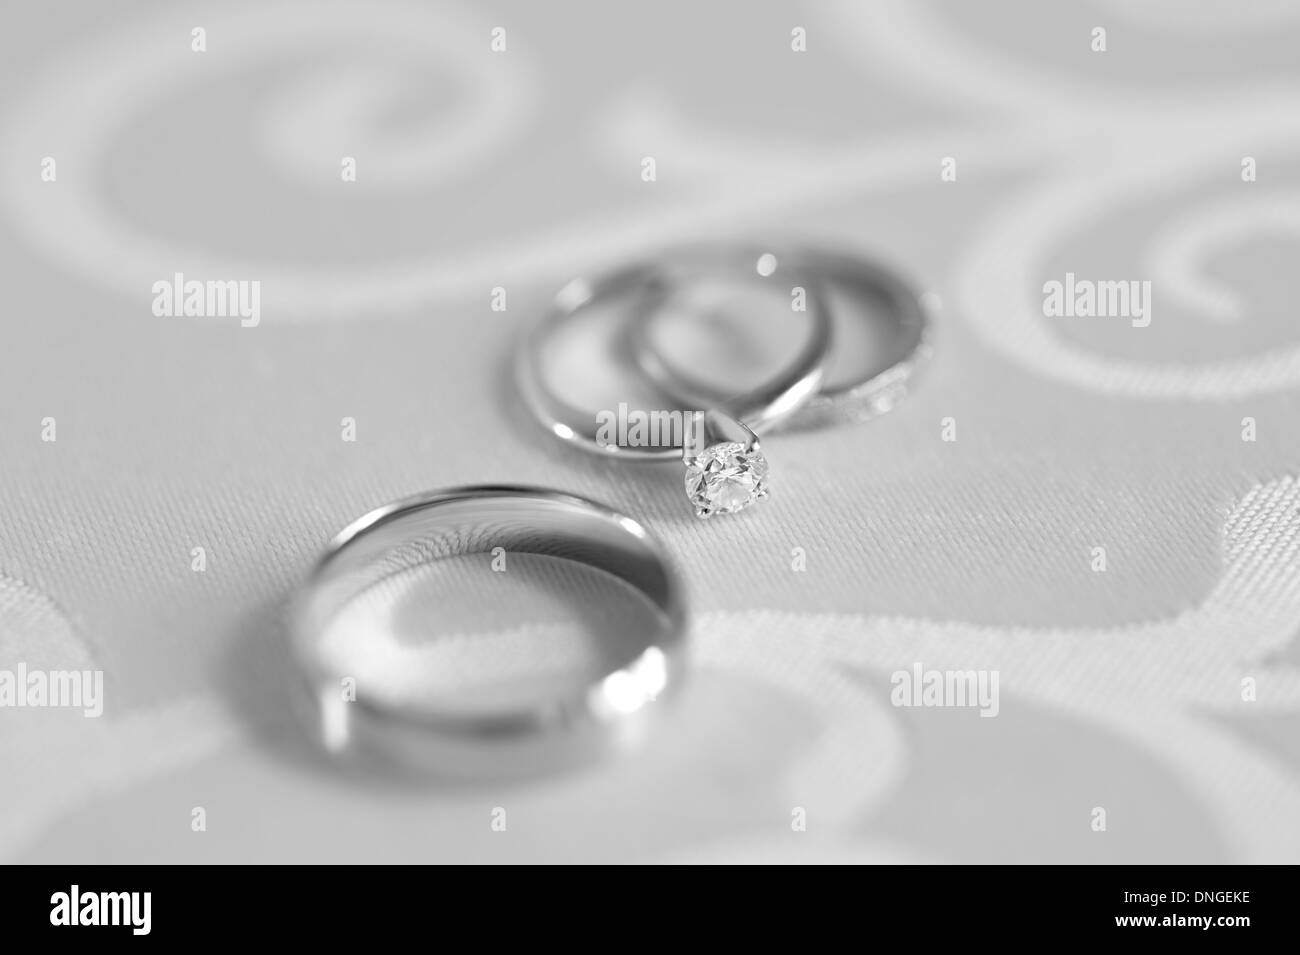 Drei Ringe: Engagement mit Diamanten und zwei Trauringe auf eine Tischplatte. Schwarz / weiß Fotografie. Stockfoto